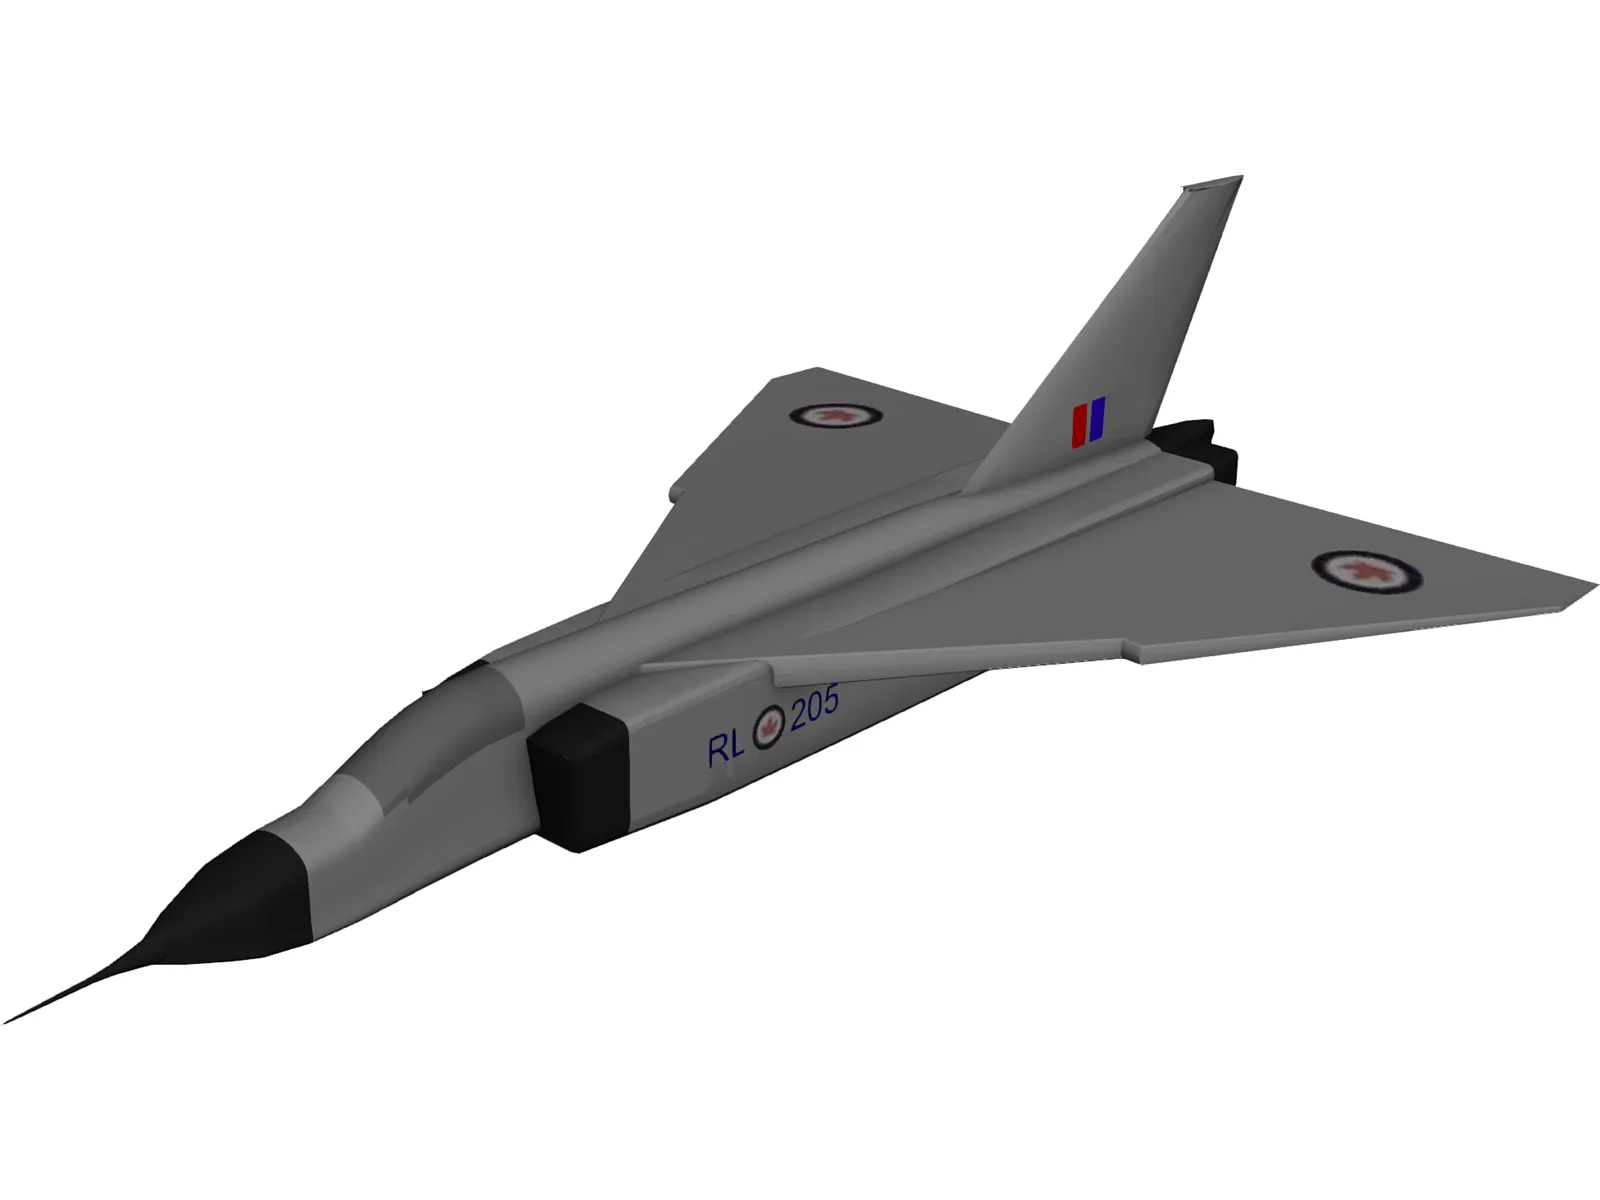 Avroe Arrow Jet Fighter 3D Model